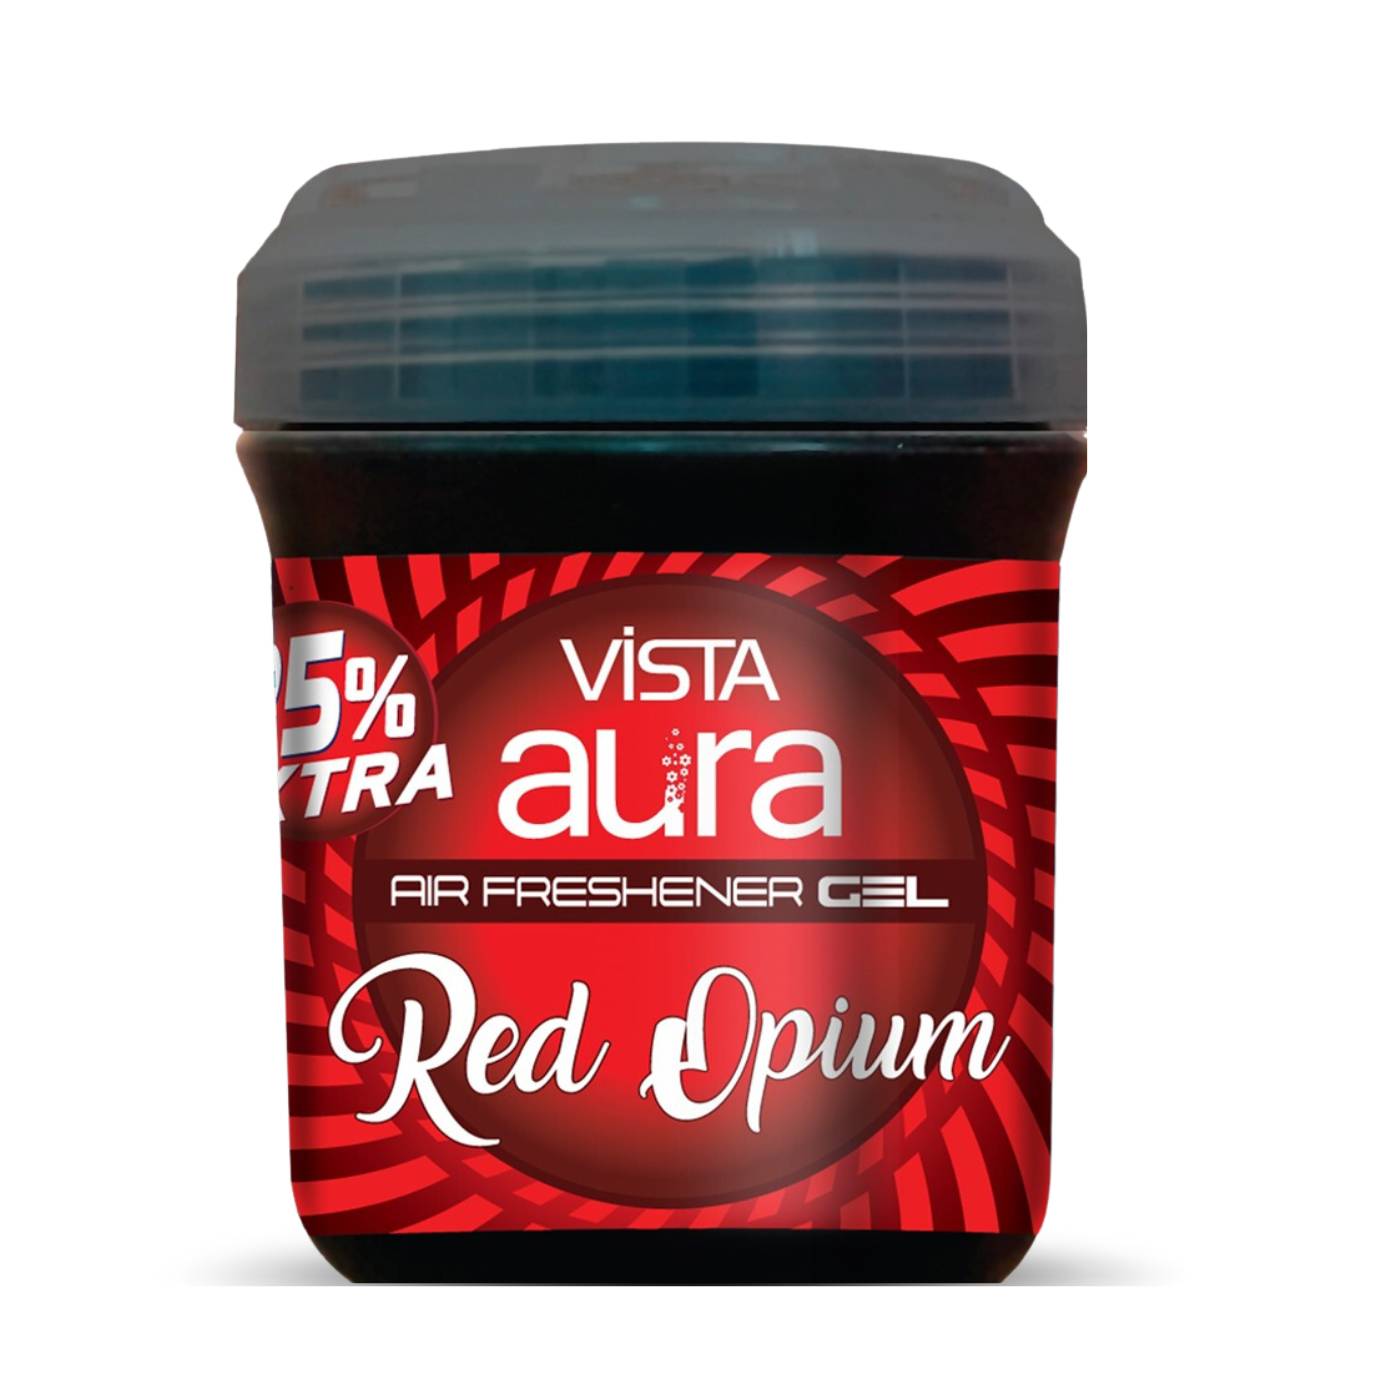 Vista Aura Air Freshener Gel Red Opium 100 g